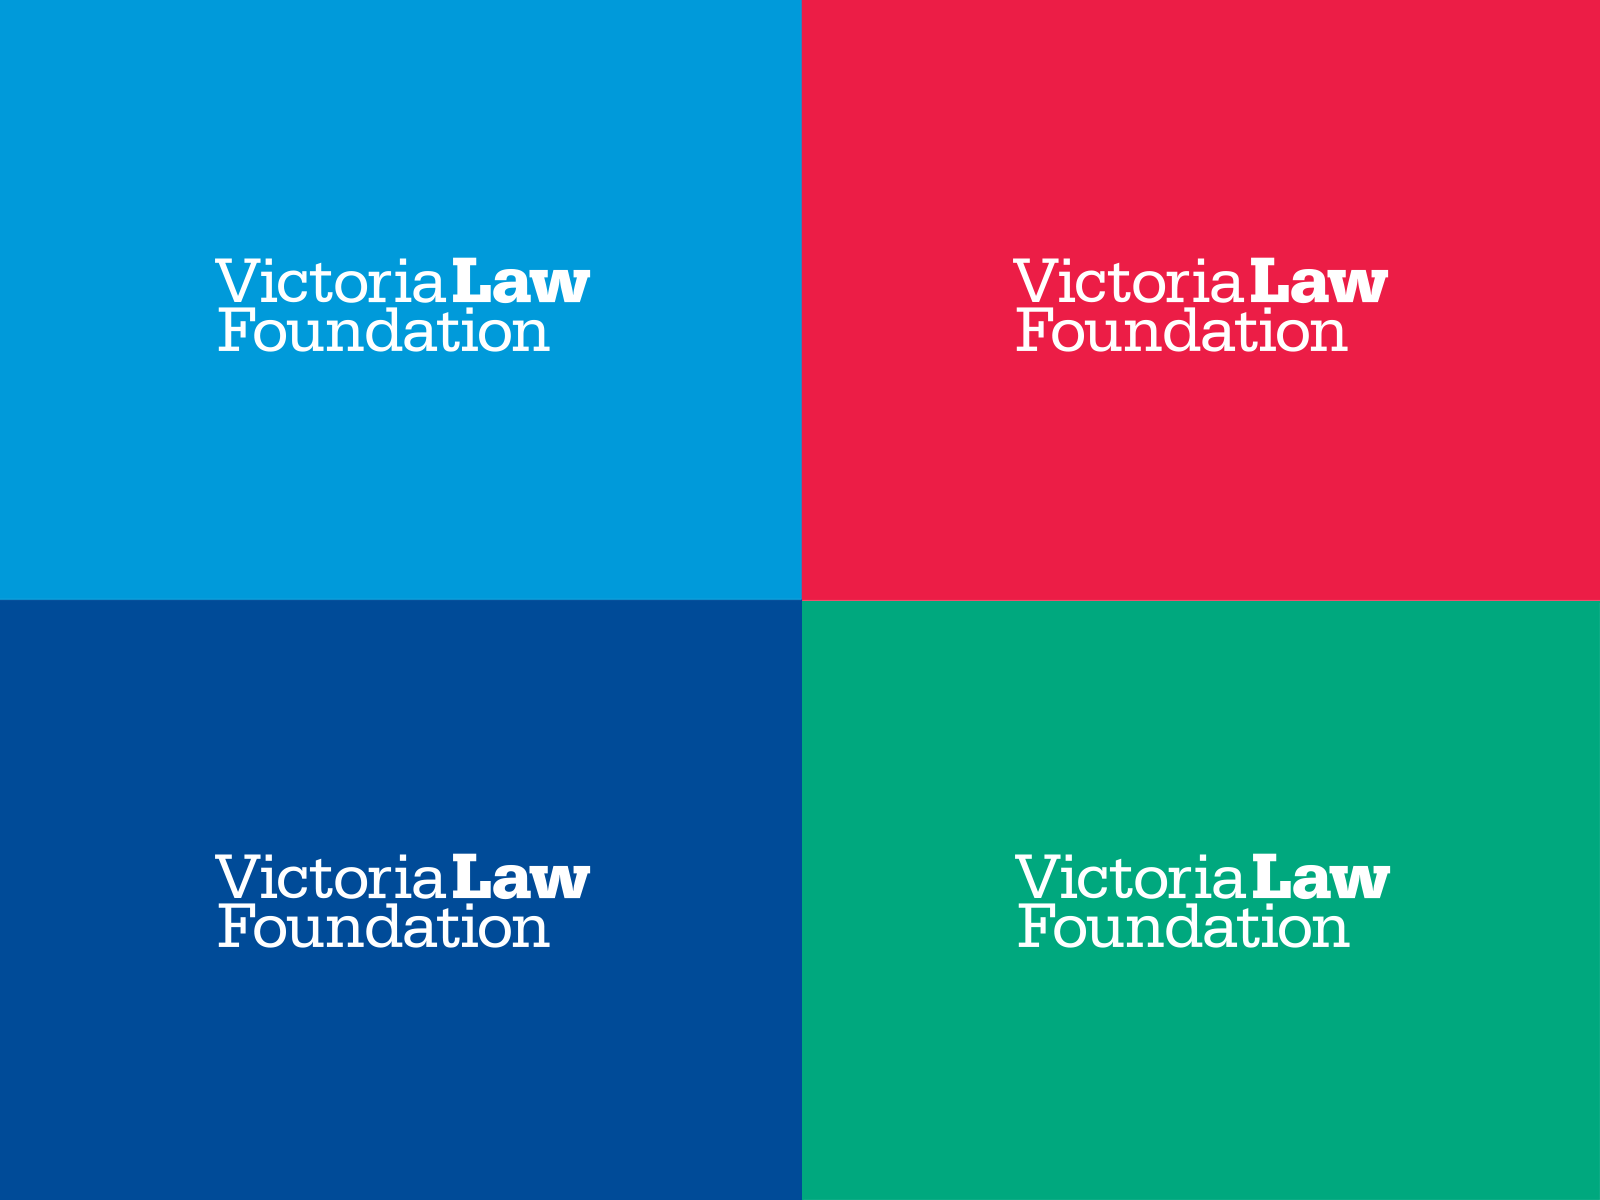 Victoria Law Foundation brand design